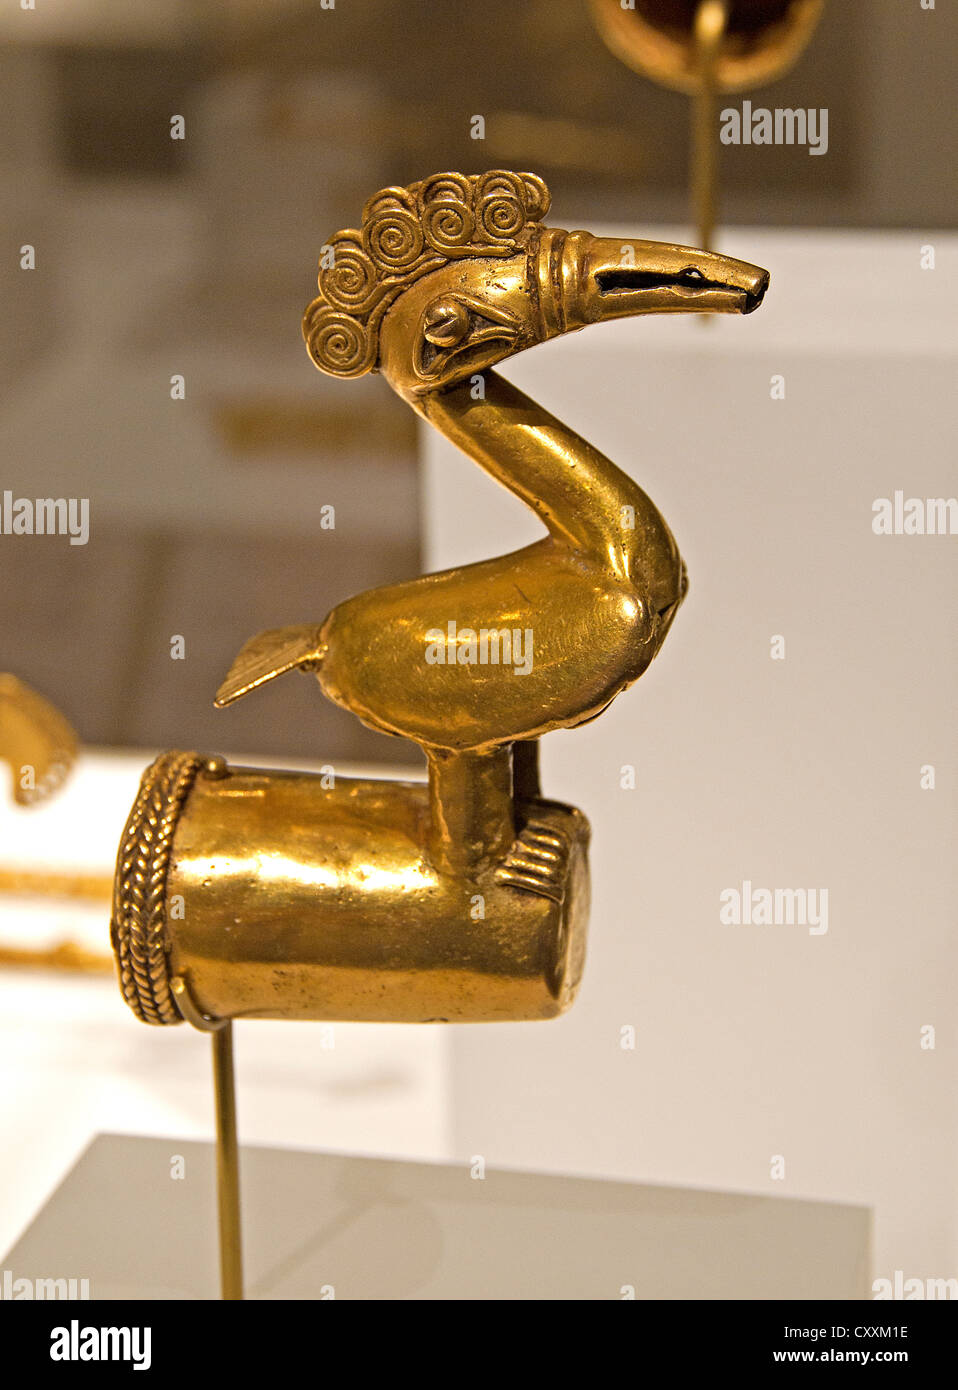 Fleuron des oiseaux 5th-10e siècle Géographie Colombie Zenu Sinu River or fleuron d'oiseaux des Caraïbes 12 cm Banque D'Images